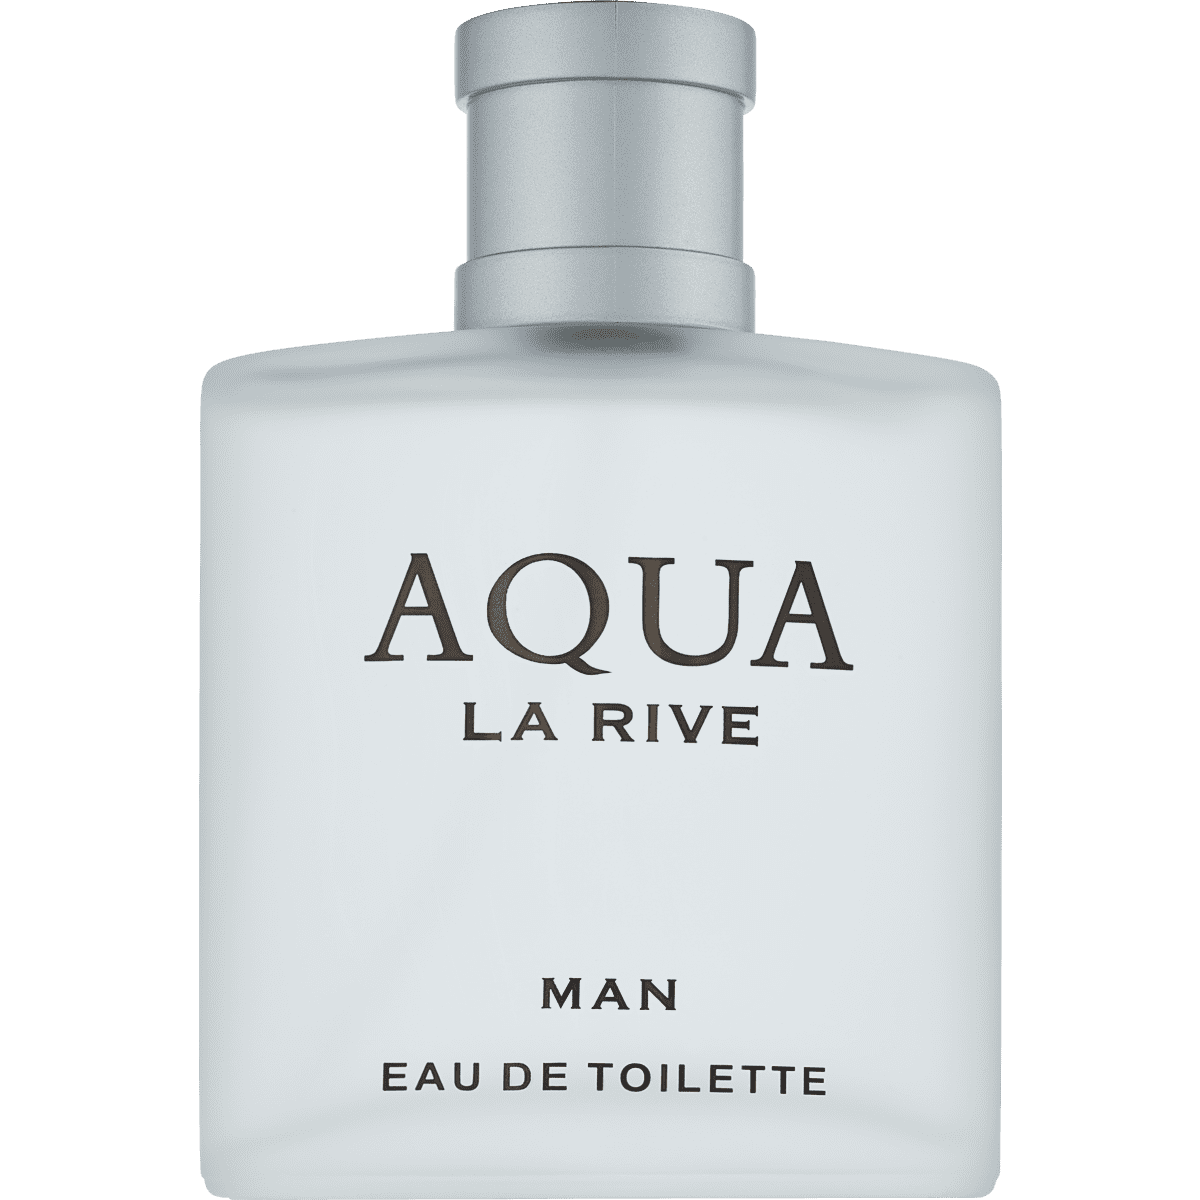 La Rive Aqua Man Eau de Toilette Spray 90 ml